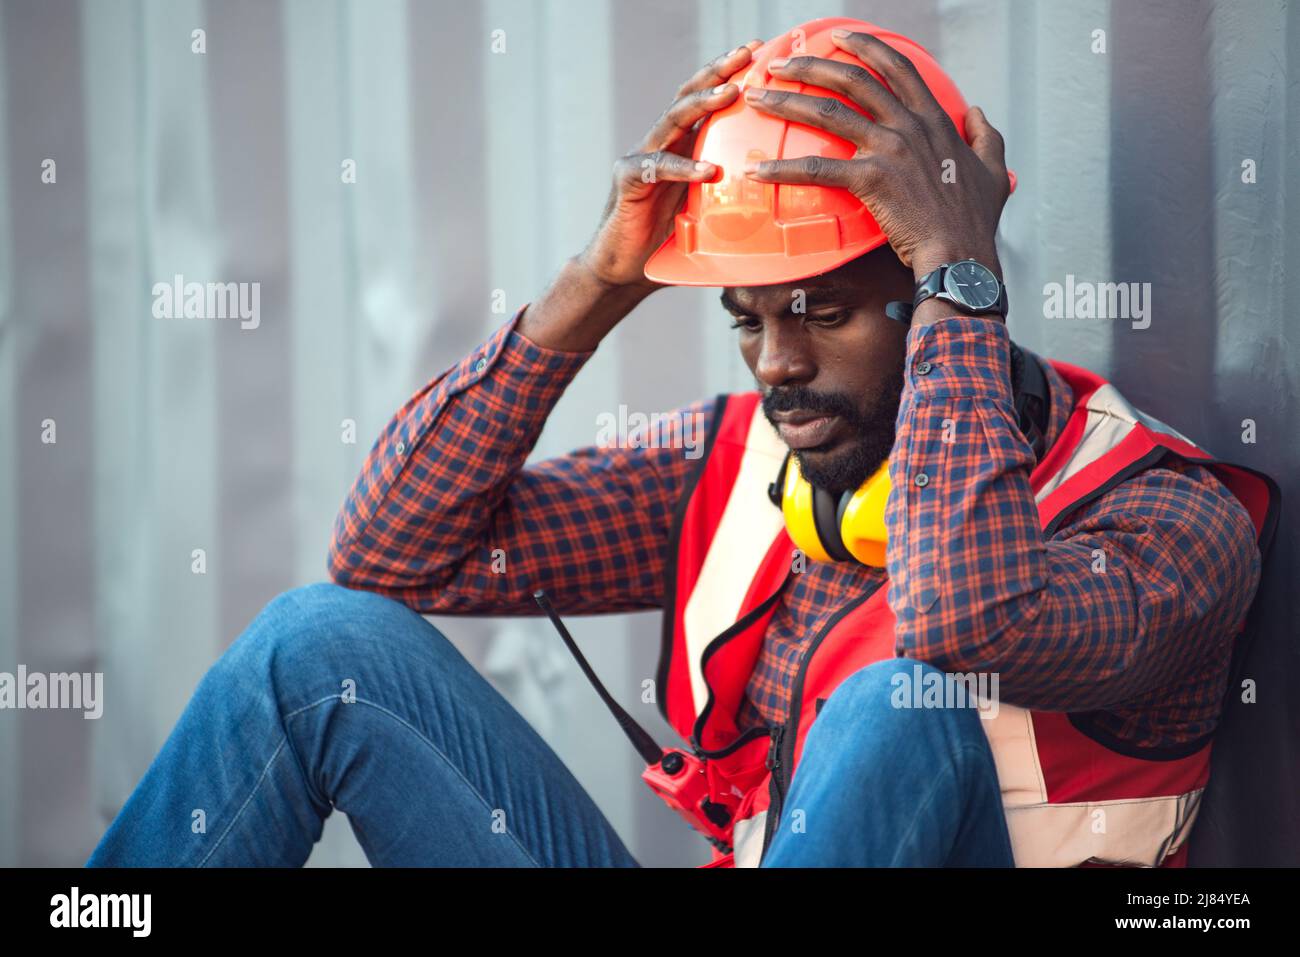 Technicien ou ingénieur afro-américain. S'asseoir près d'un récipient et avoir l'air fatigué et endormi ou sans emploi. Logistique concept de transport de fret industriel. Banque D'Images